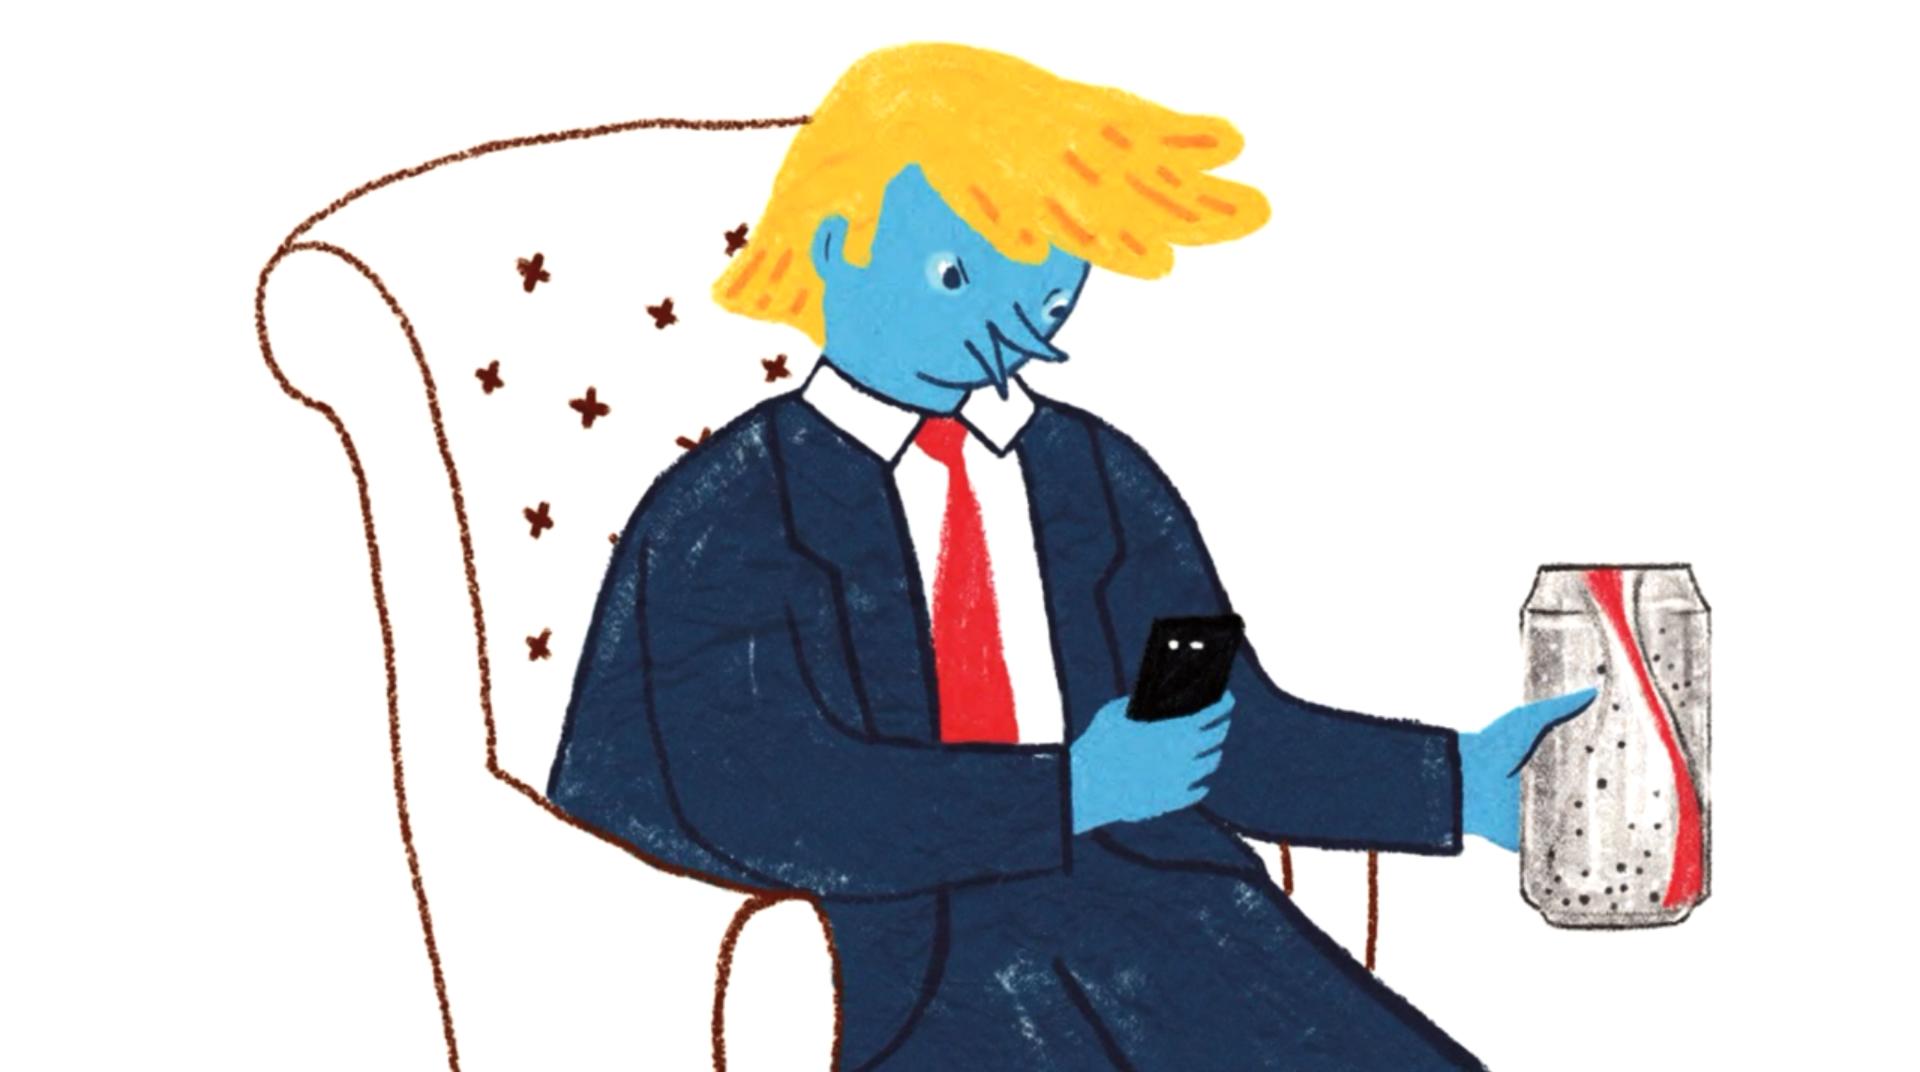 (illustrazione) Uomo -apparentemente Donald Trump- seduto su una poltrona twitta bevendo coca-cola